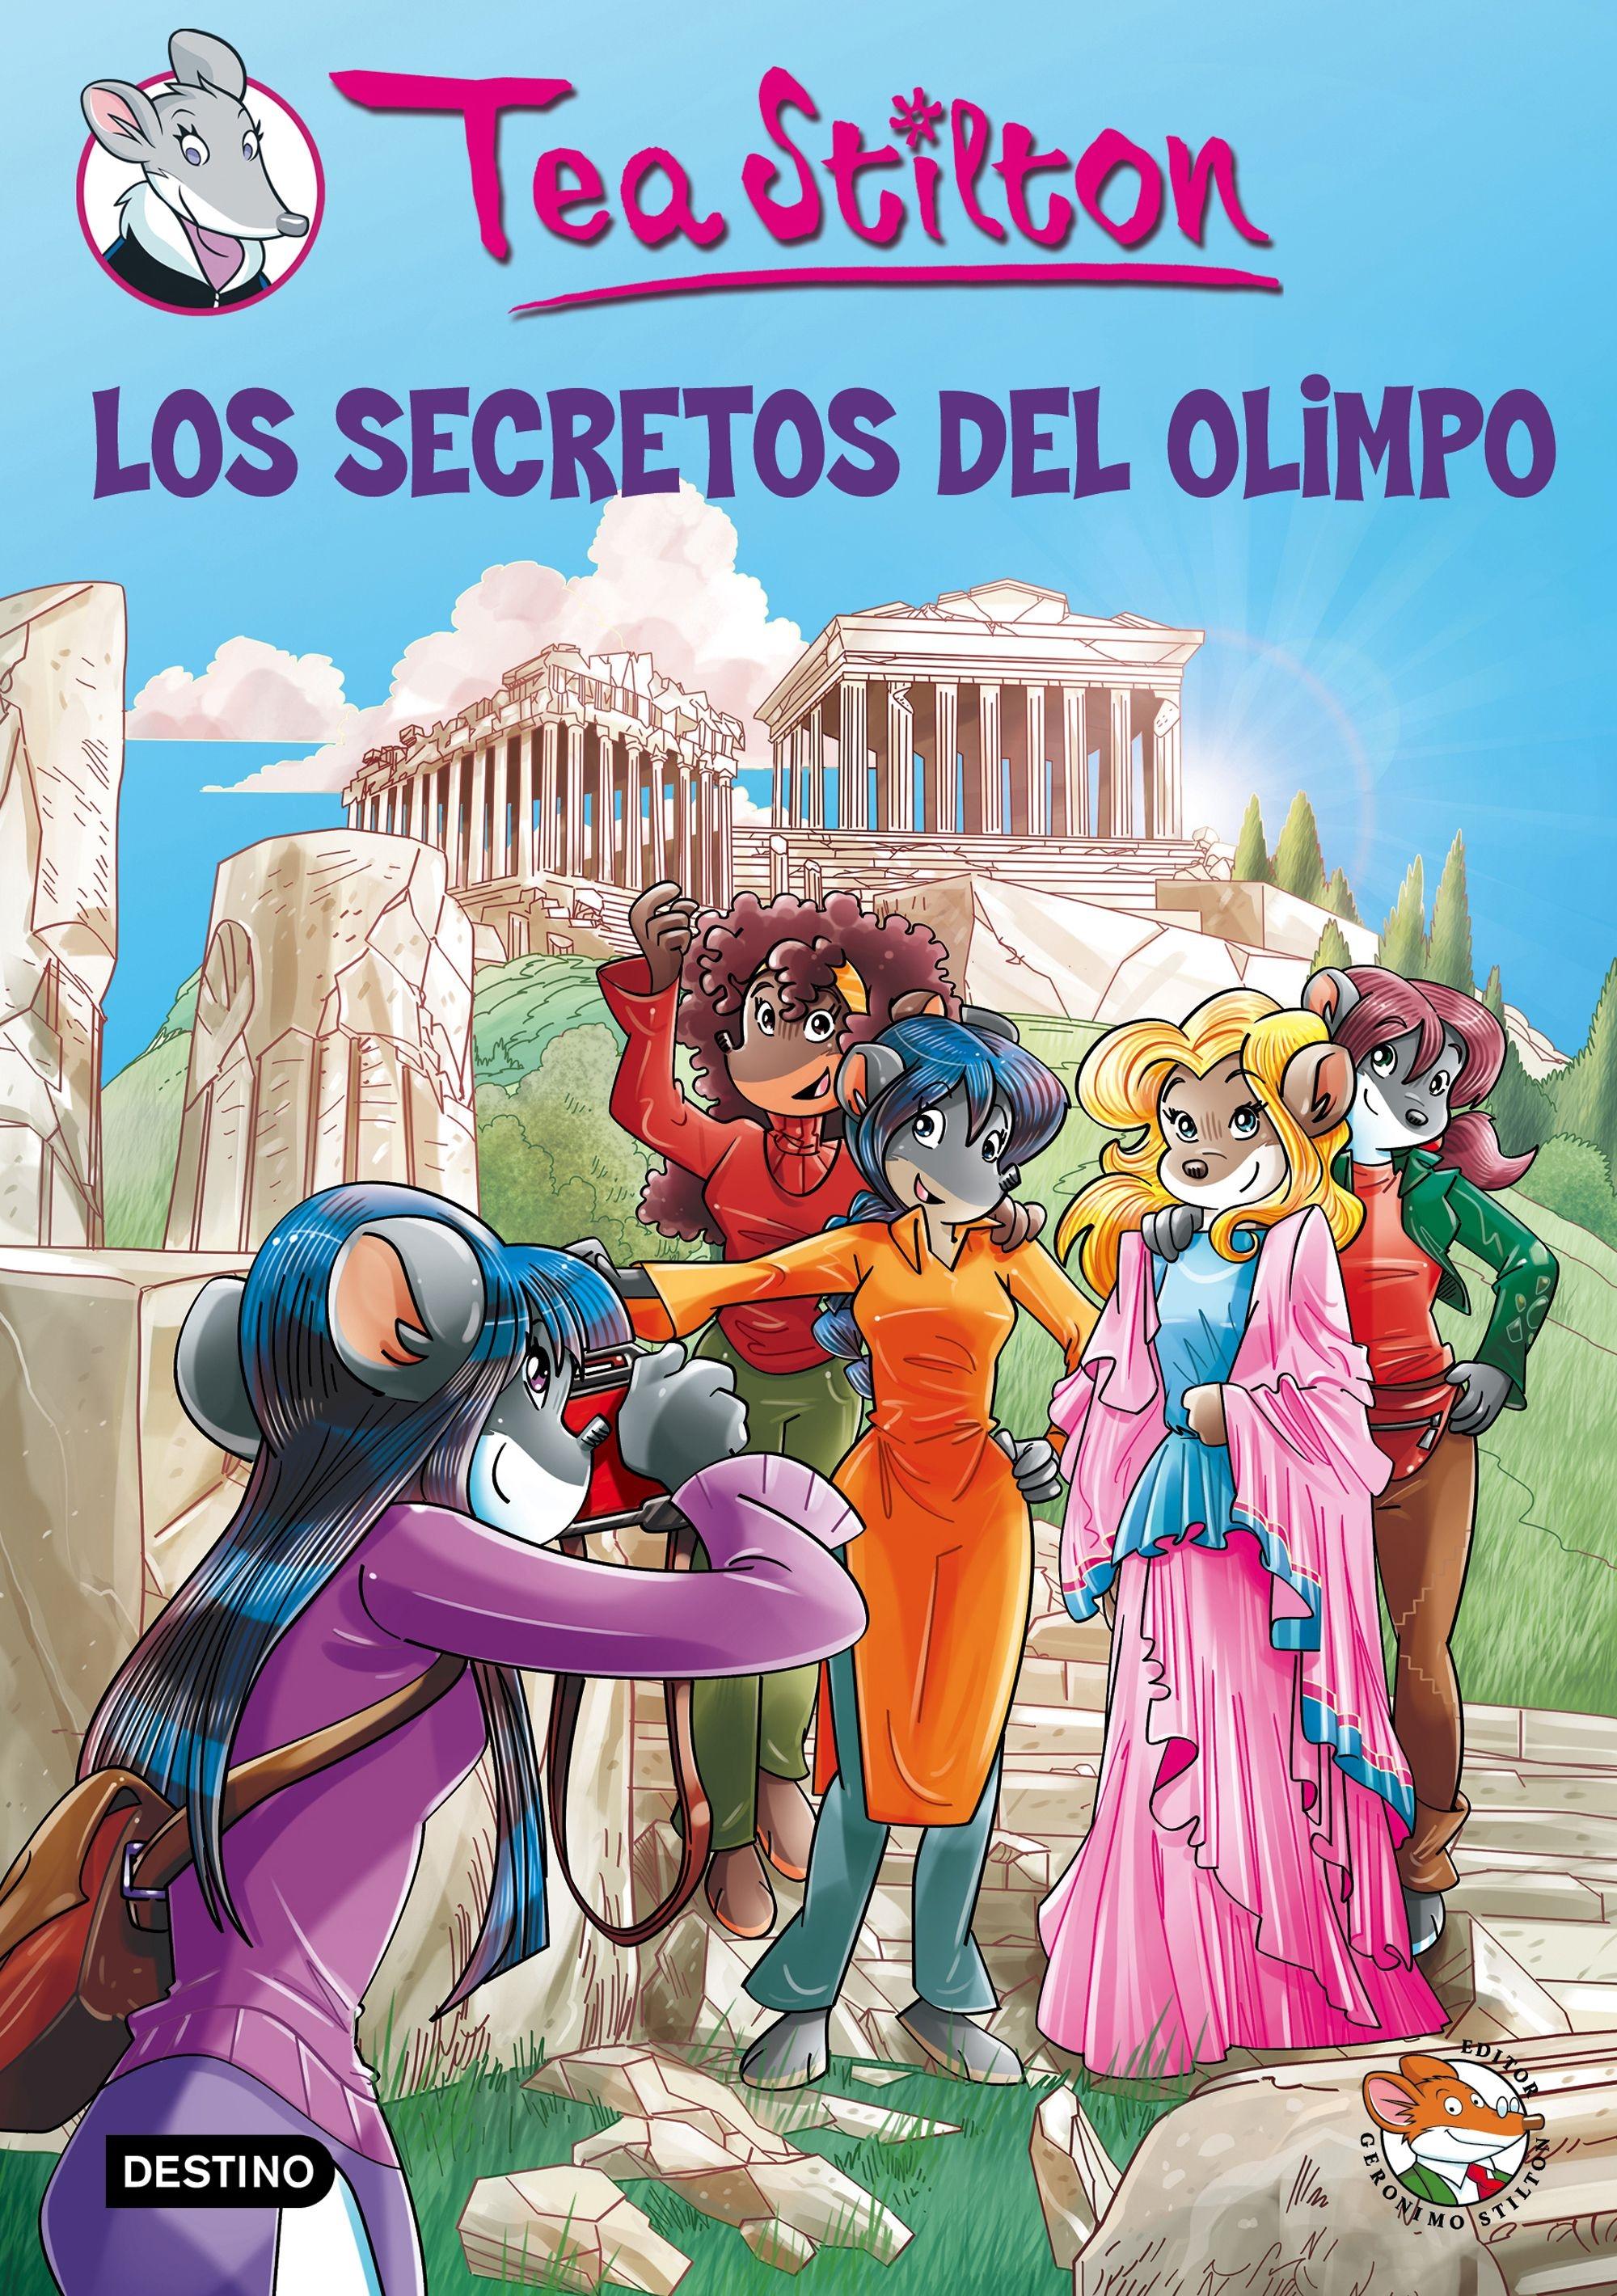 Los Secretos del Olimpo "Tea Stilton 20 / Regalo Estucha del Club de Tea". 